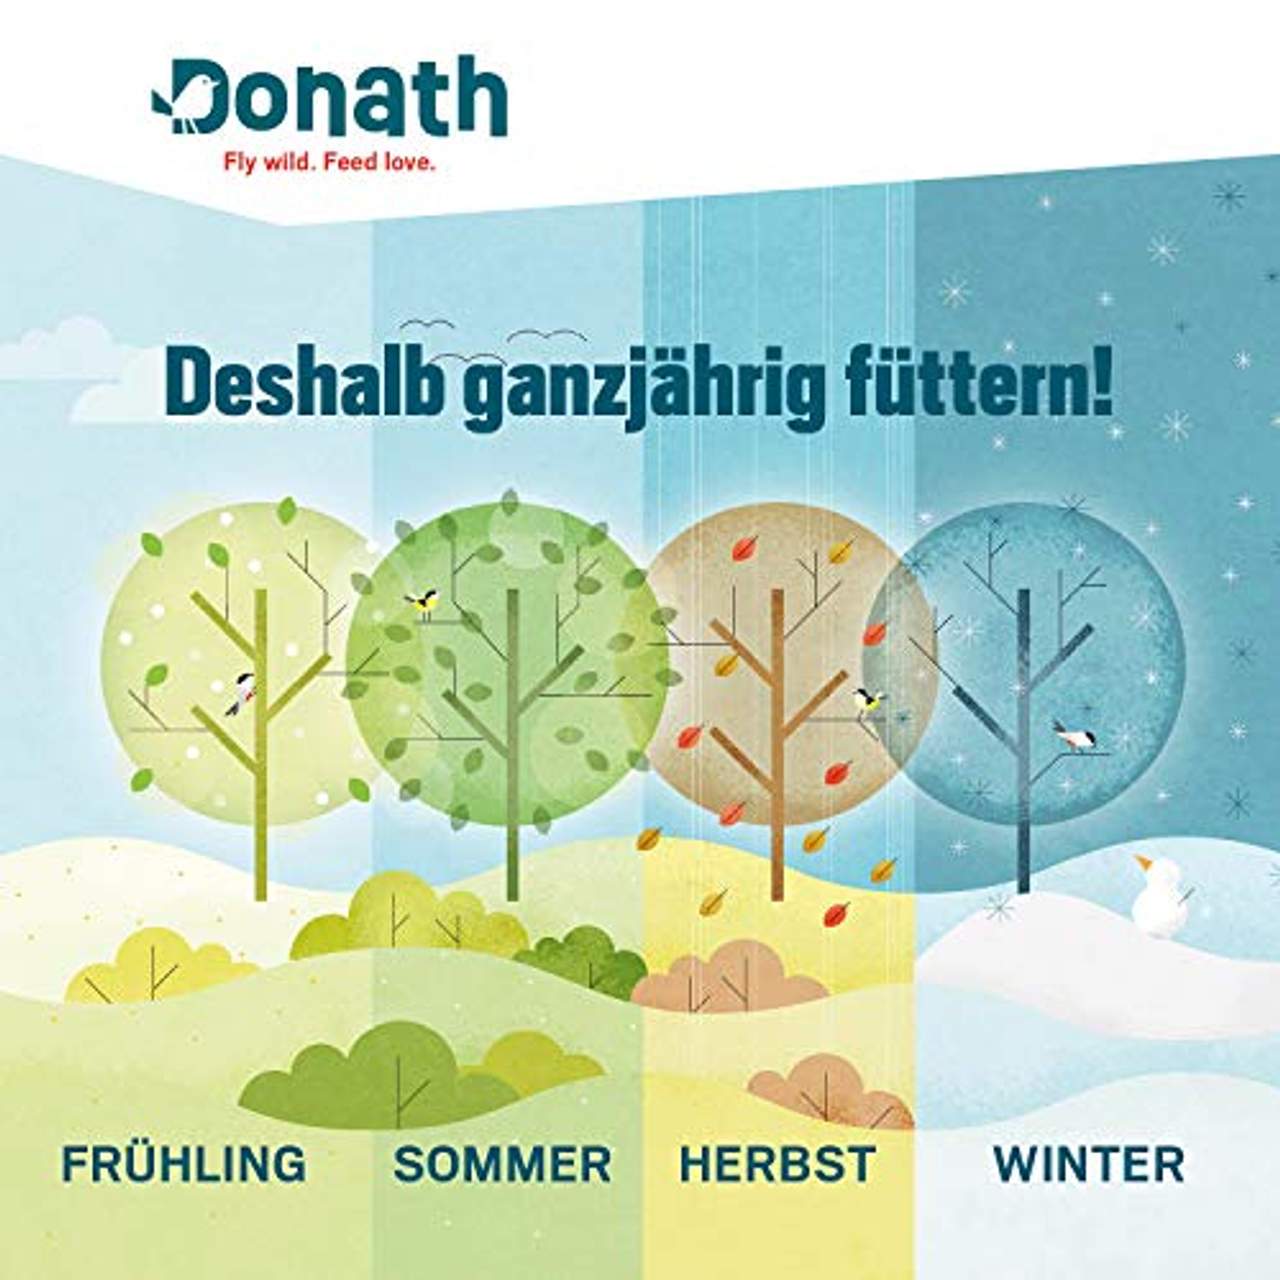 Donath Energie-Knödel klassisch ohne Netz